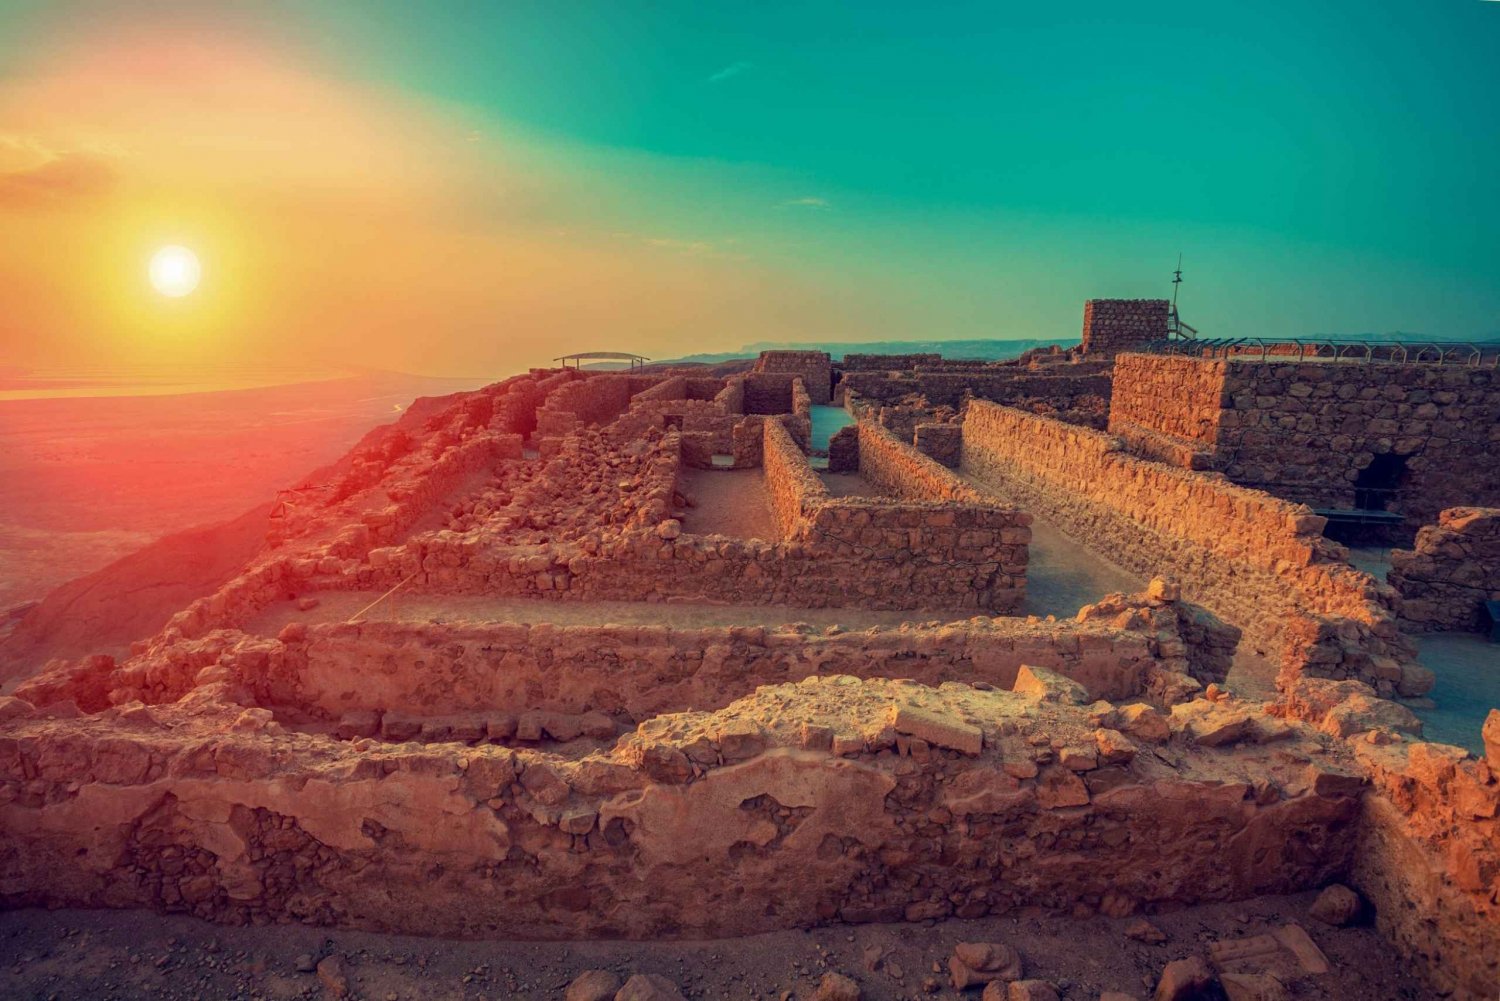 Masadan ja Kuolleenmeren kierros: Koko päivä Jerusalemista